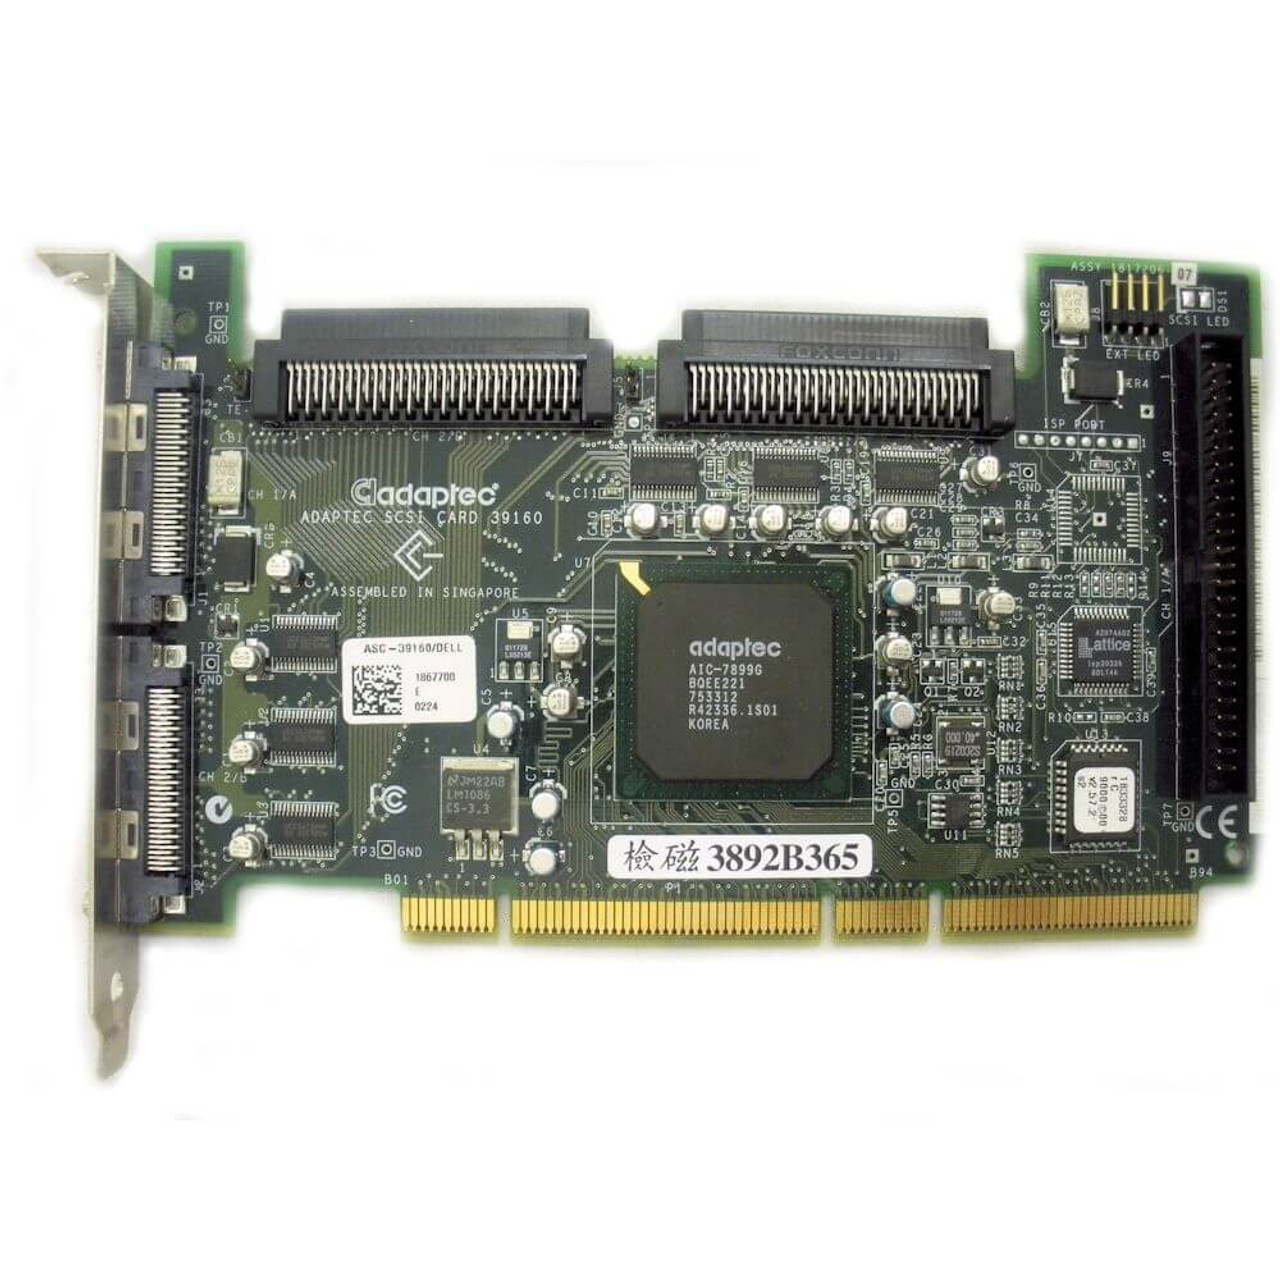 Dell 360MG DC U160 SCSI Controller